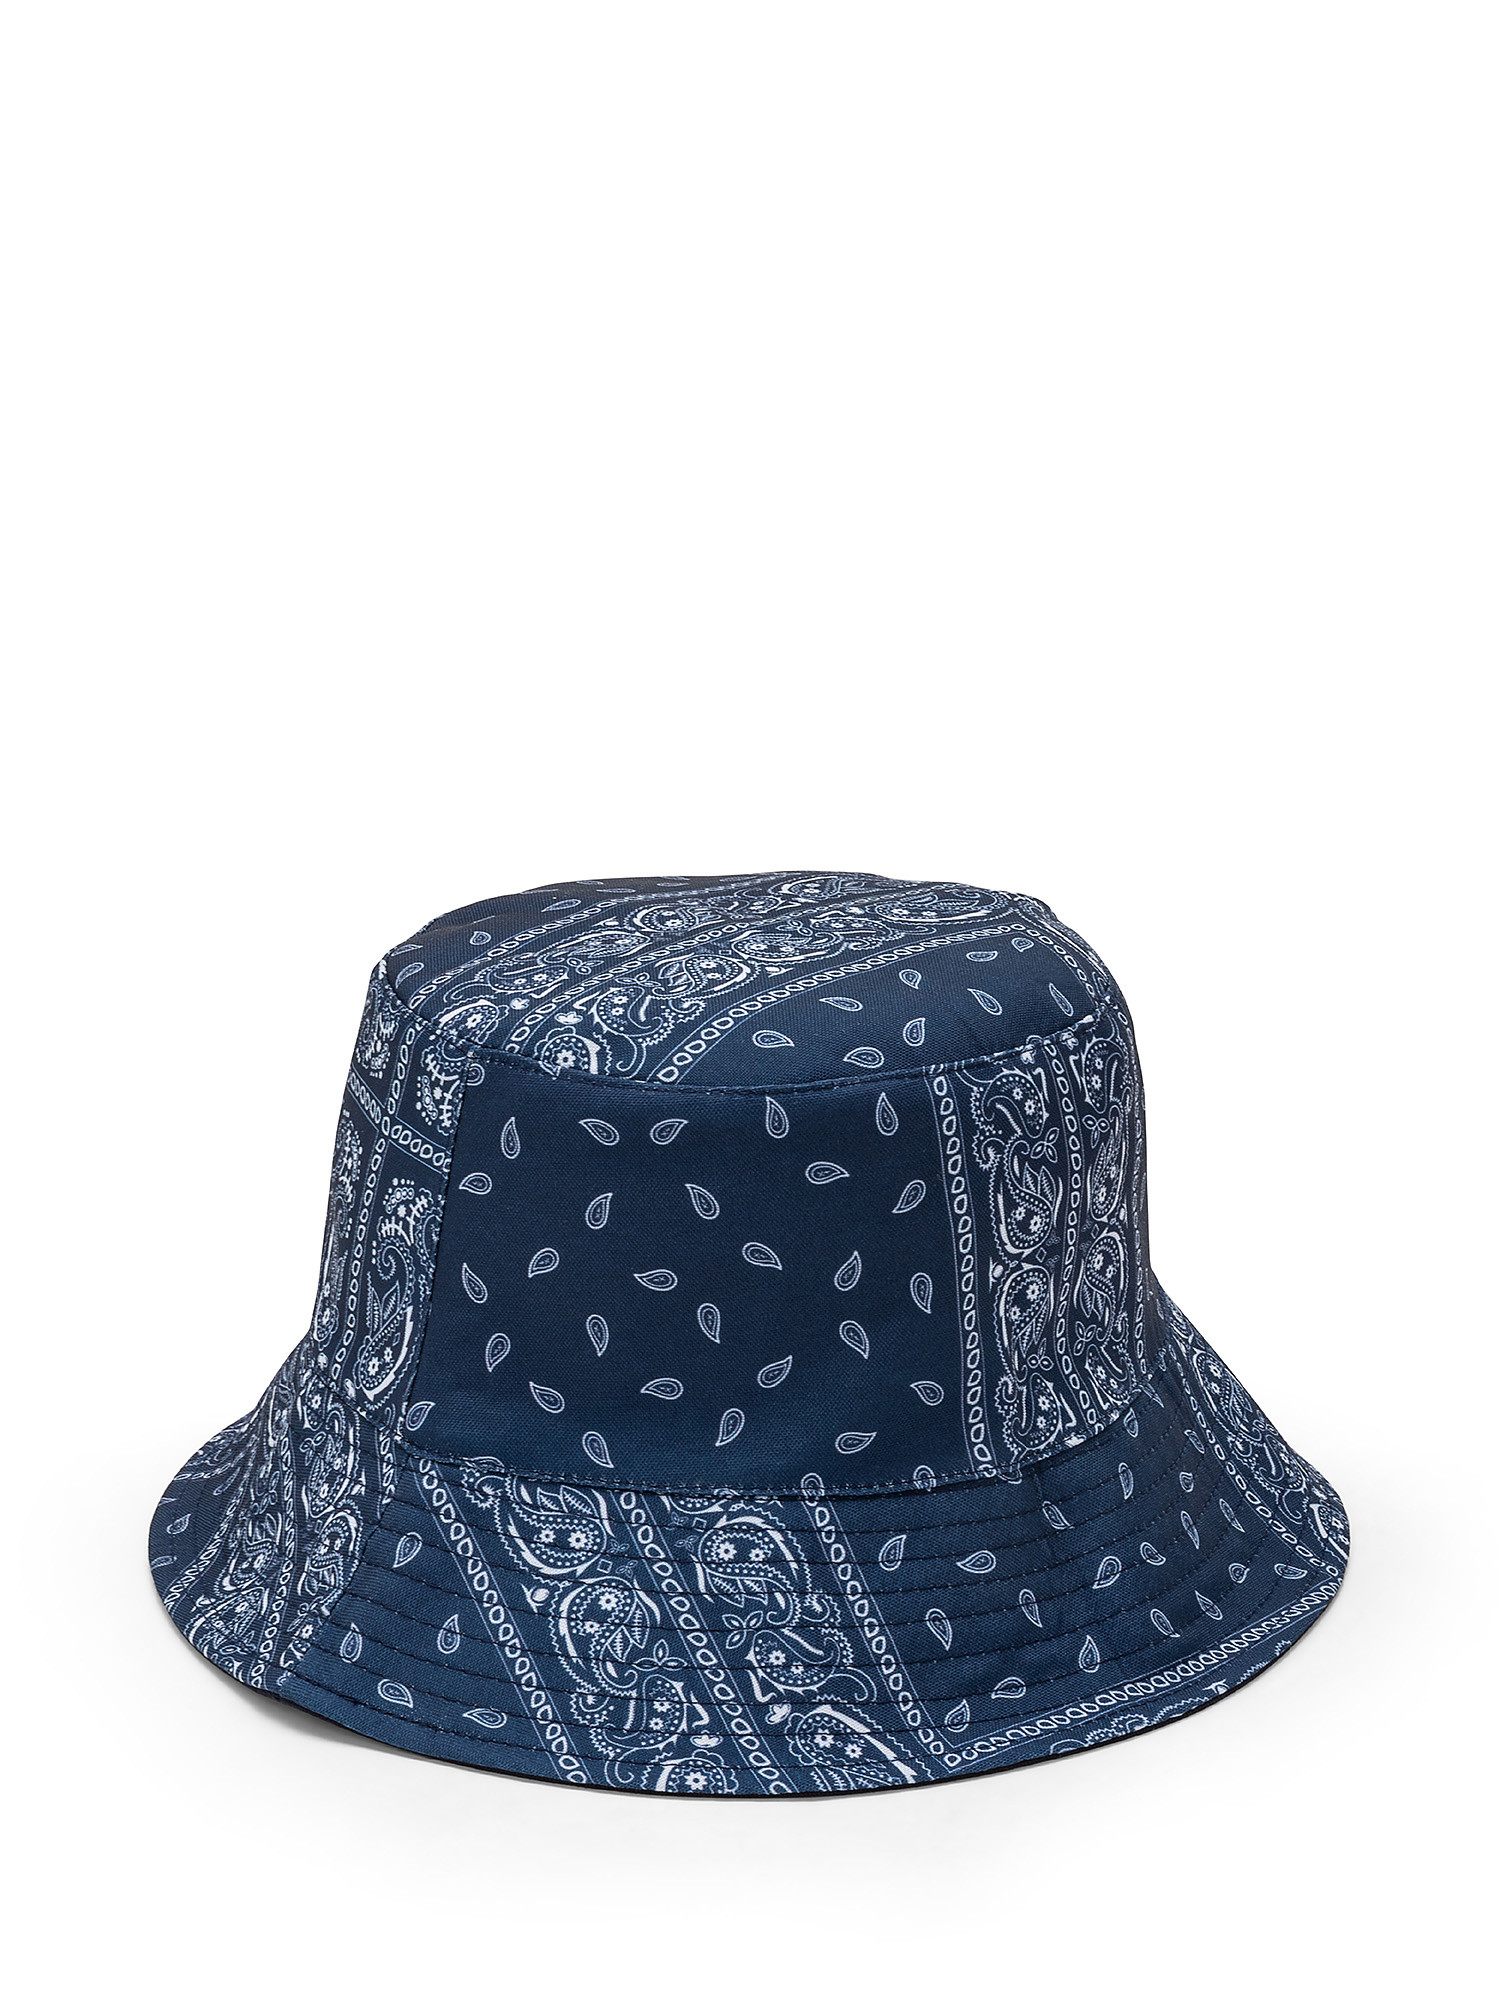 Cappello cloche stampa bandana, Blu, large